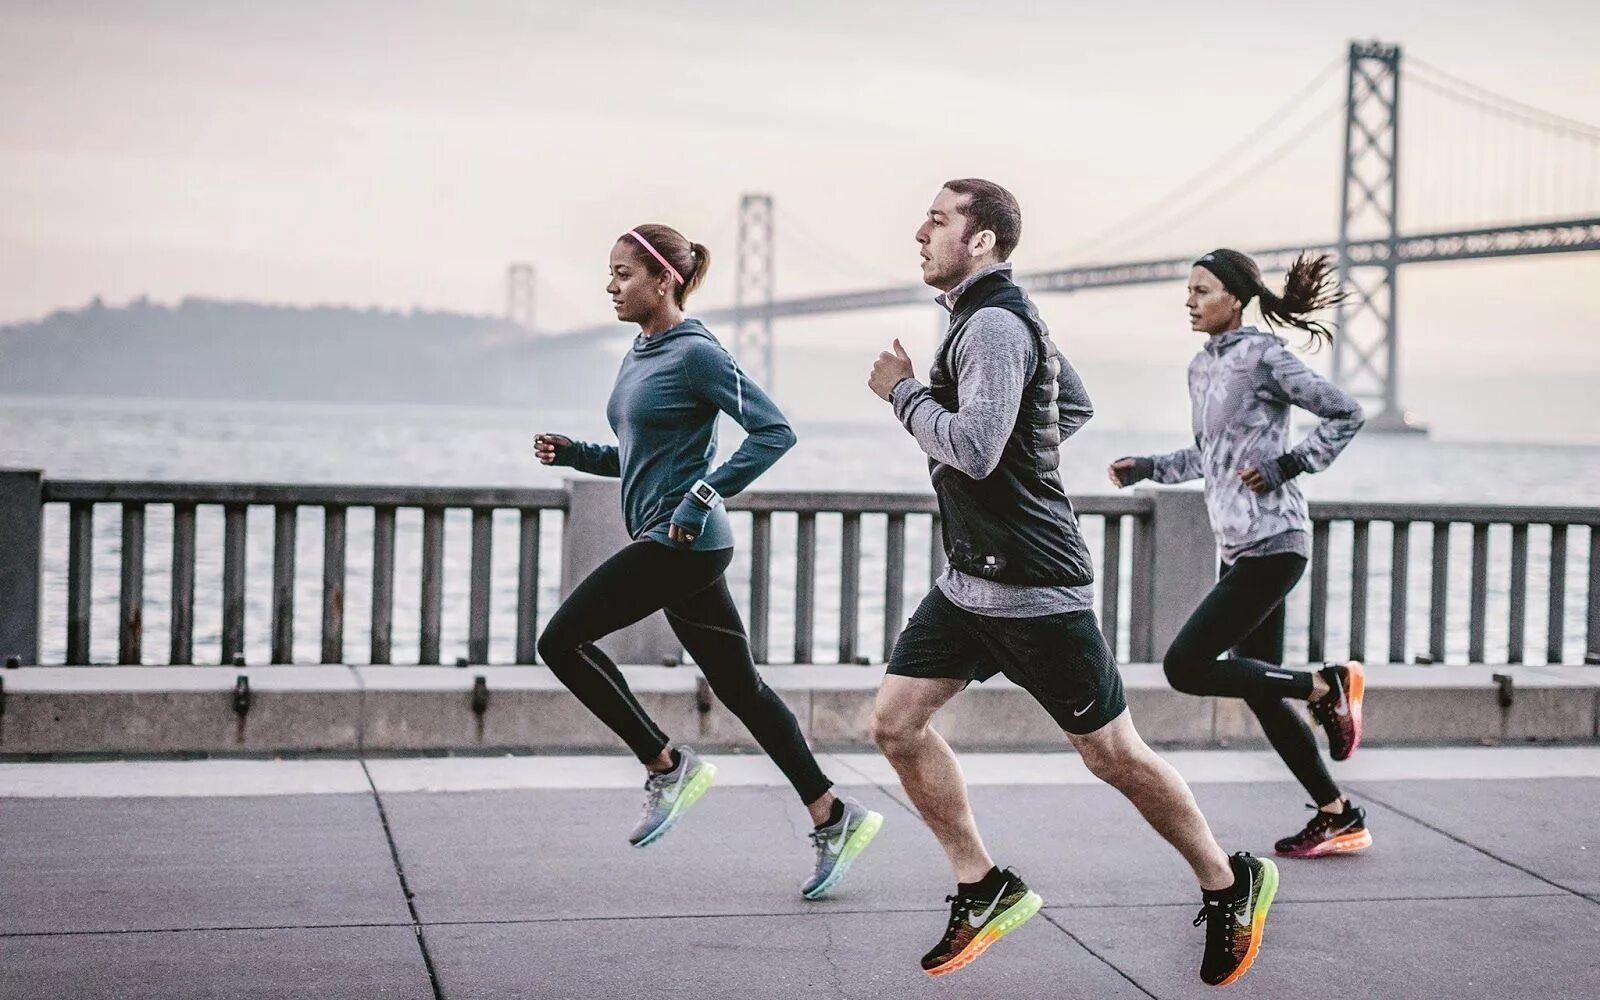 People s actions. Nike Running. Nike Running бег. Занятие спортом. Стильный спортивный образ.